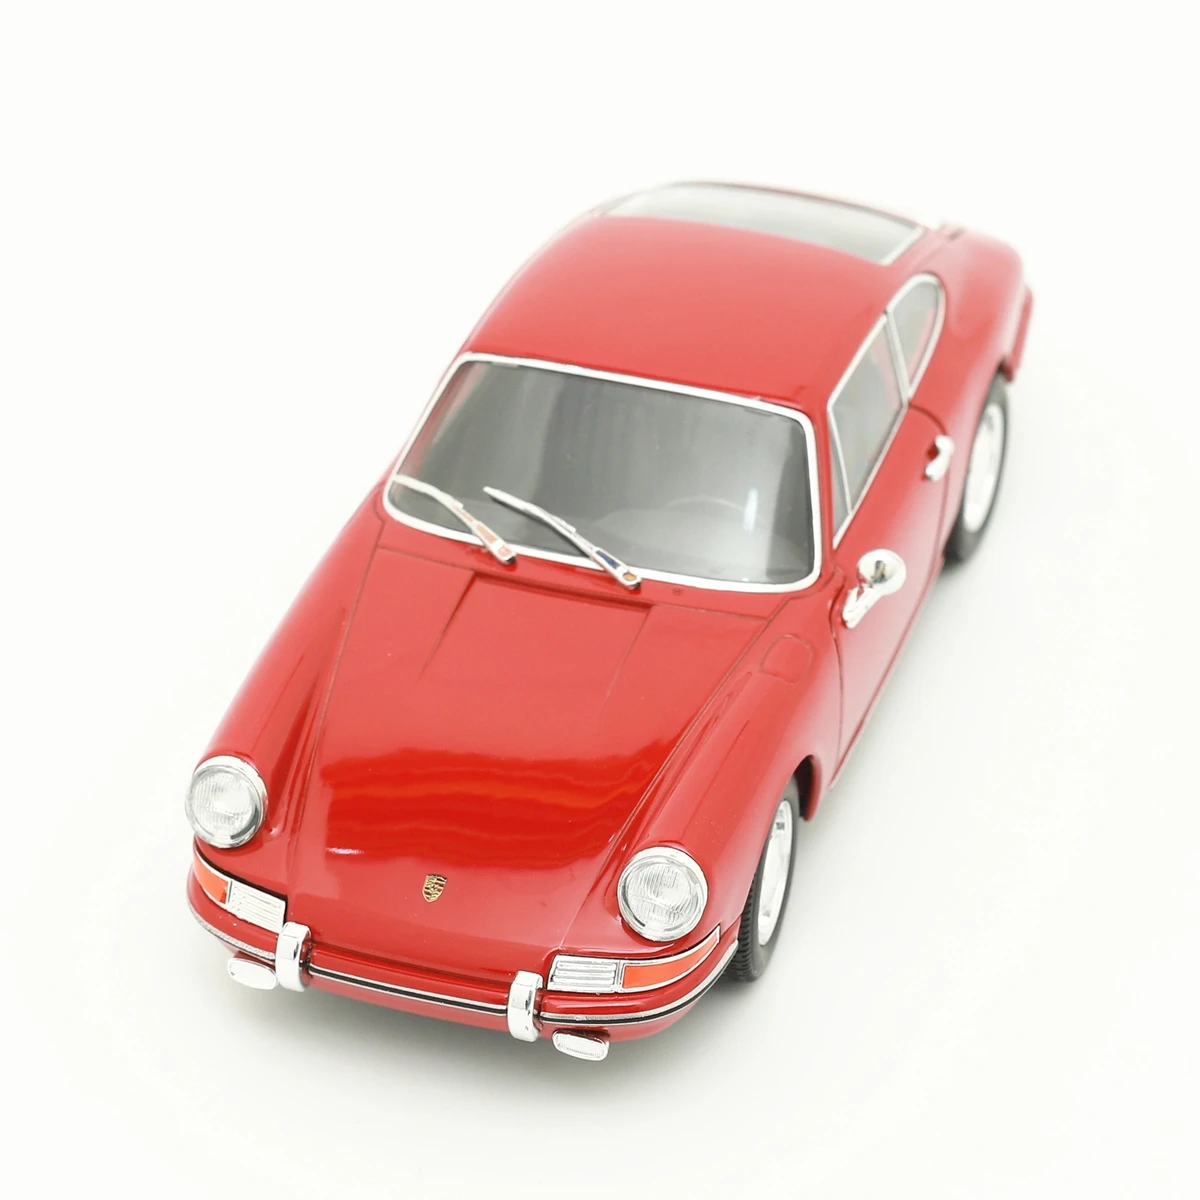 

Модель автомобиля WELLY 1:24 1964 Porsche 911, литый под давлением, коллекционная Игрушечная модель автомобиля, подарок на Рождество